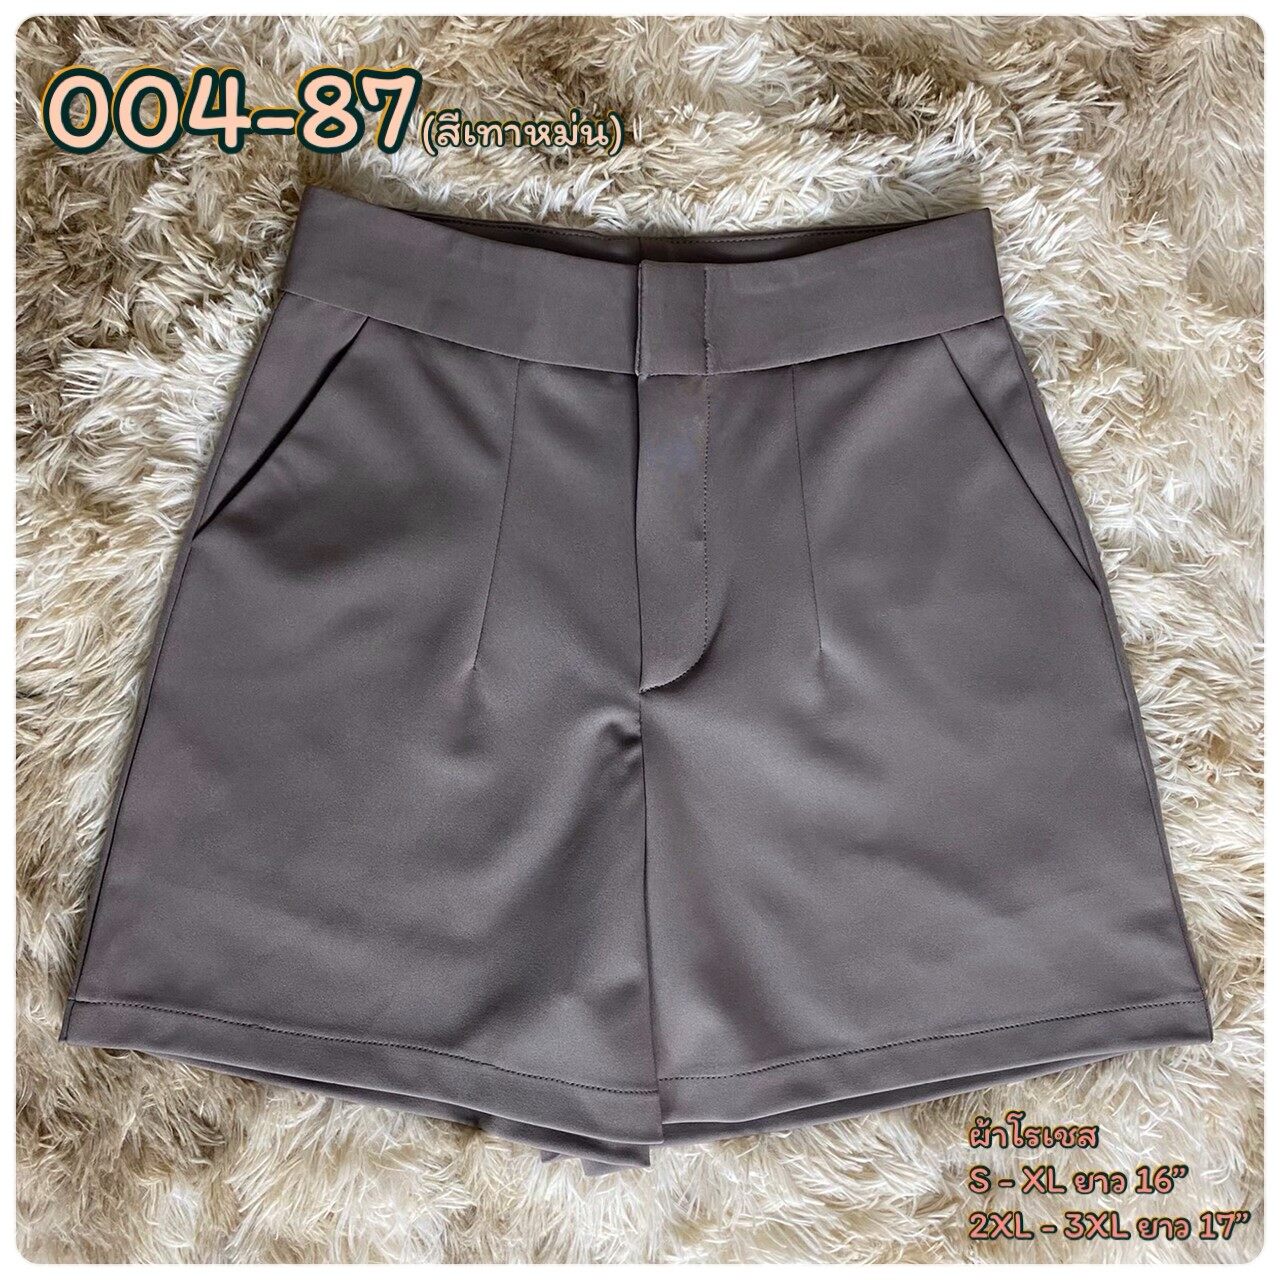 OHOskirt กางเกงขาสั้น กางเกงซิปหน้า กางเกงผ้าโรเชฟ 004-82/004-83 / 004-84 /004-80 /004-87/004-88/004-85/004-81/004-86